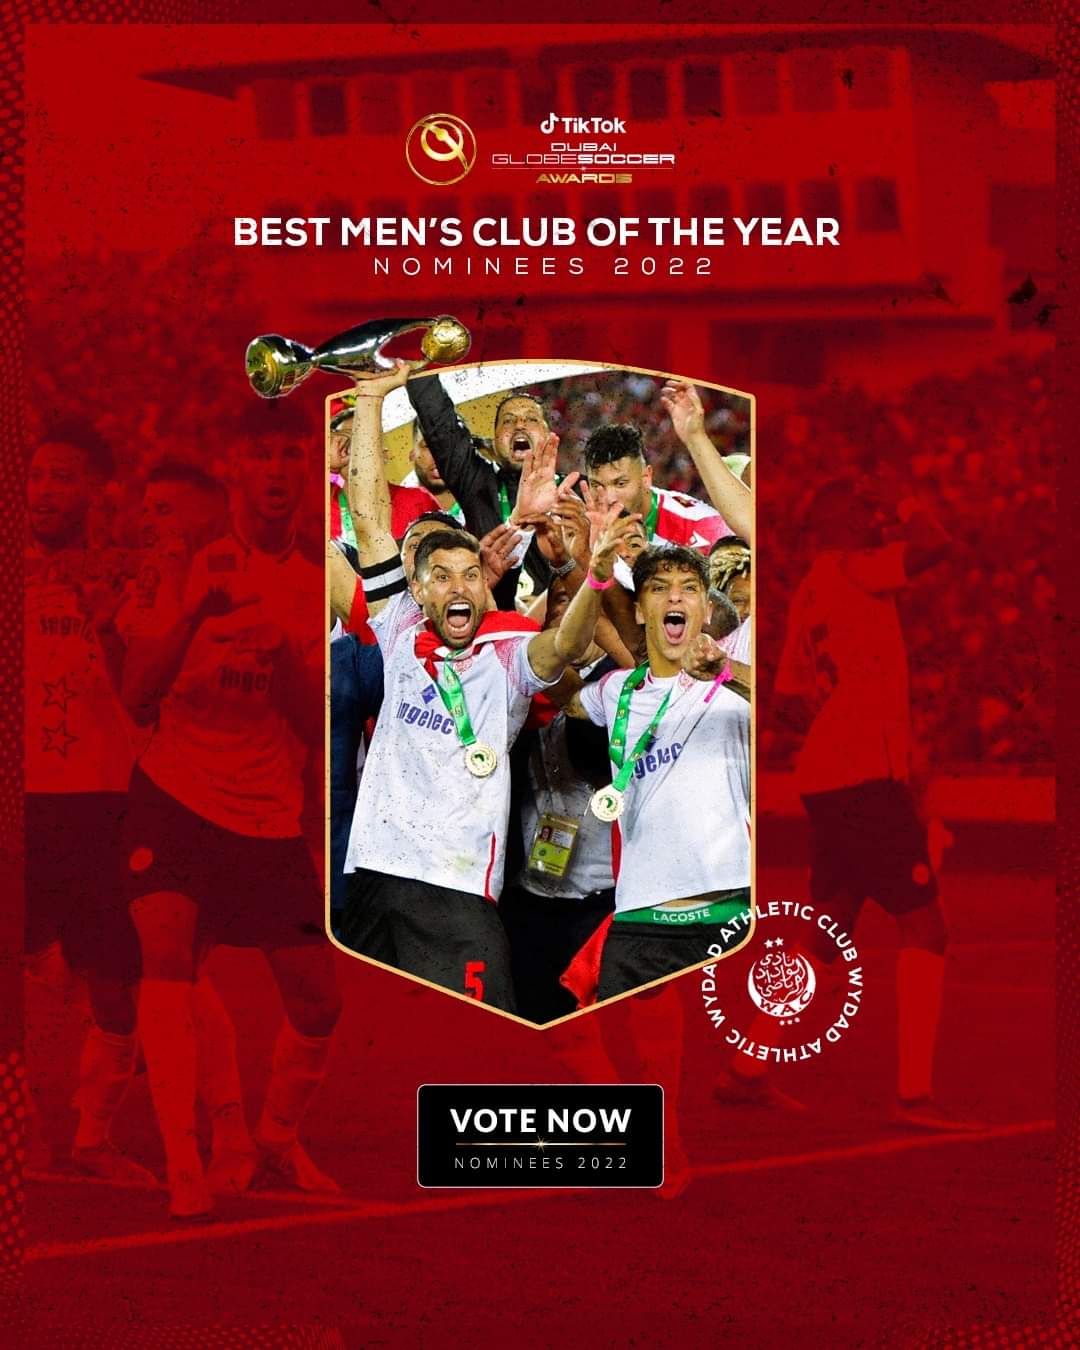 Globe Soccer Awards 2022 : Le Wydad parmi les clubs nominés